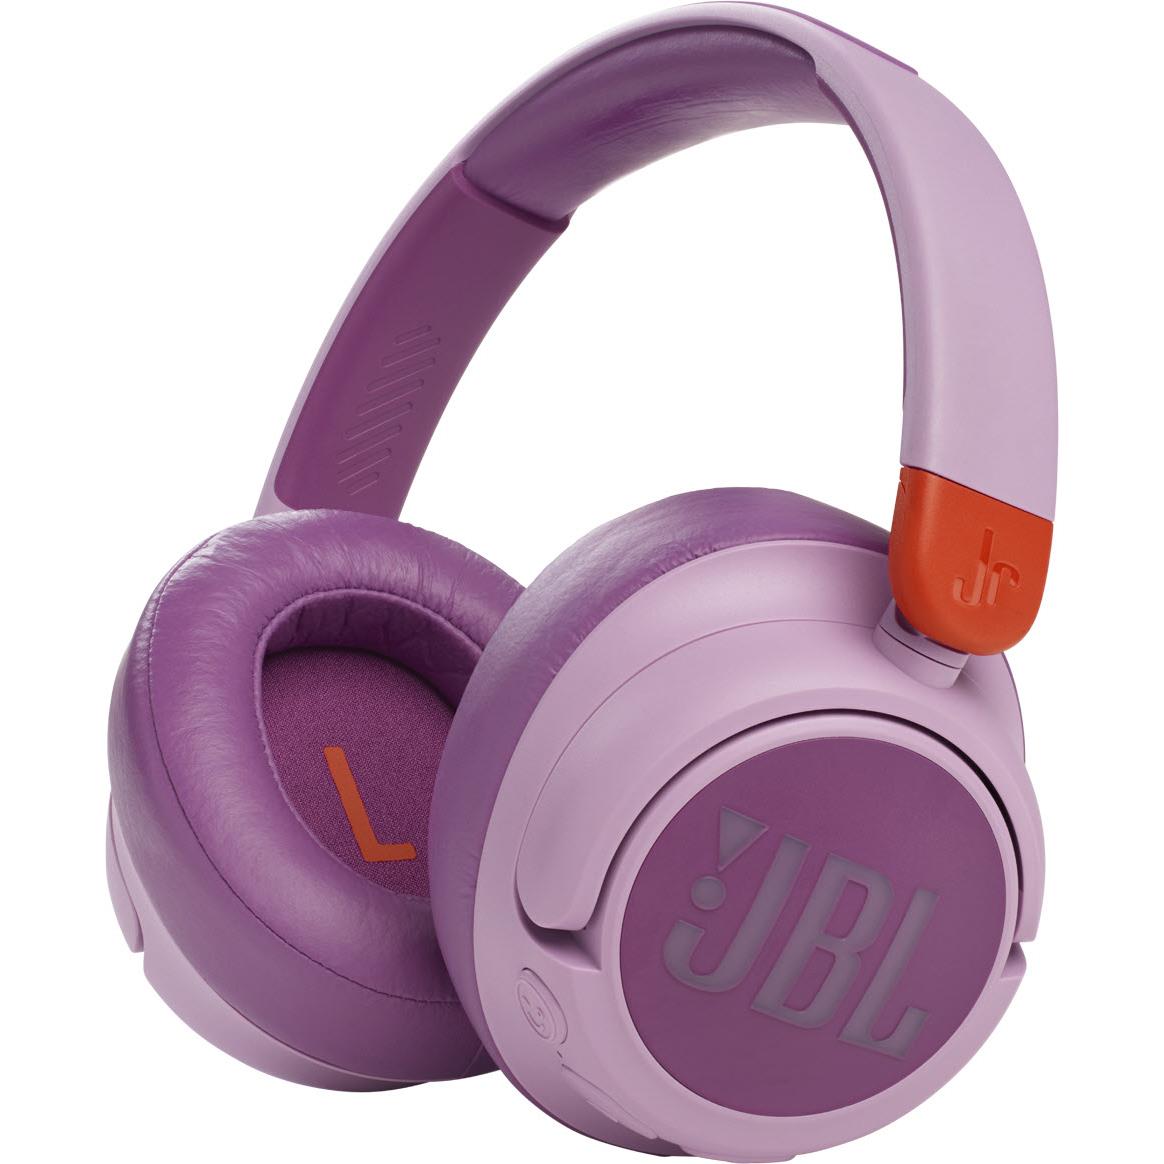 jbl jr460 wireless noise cancelling kids over-ear headphones (pink)